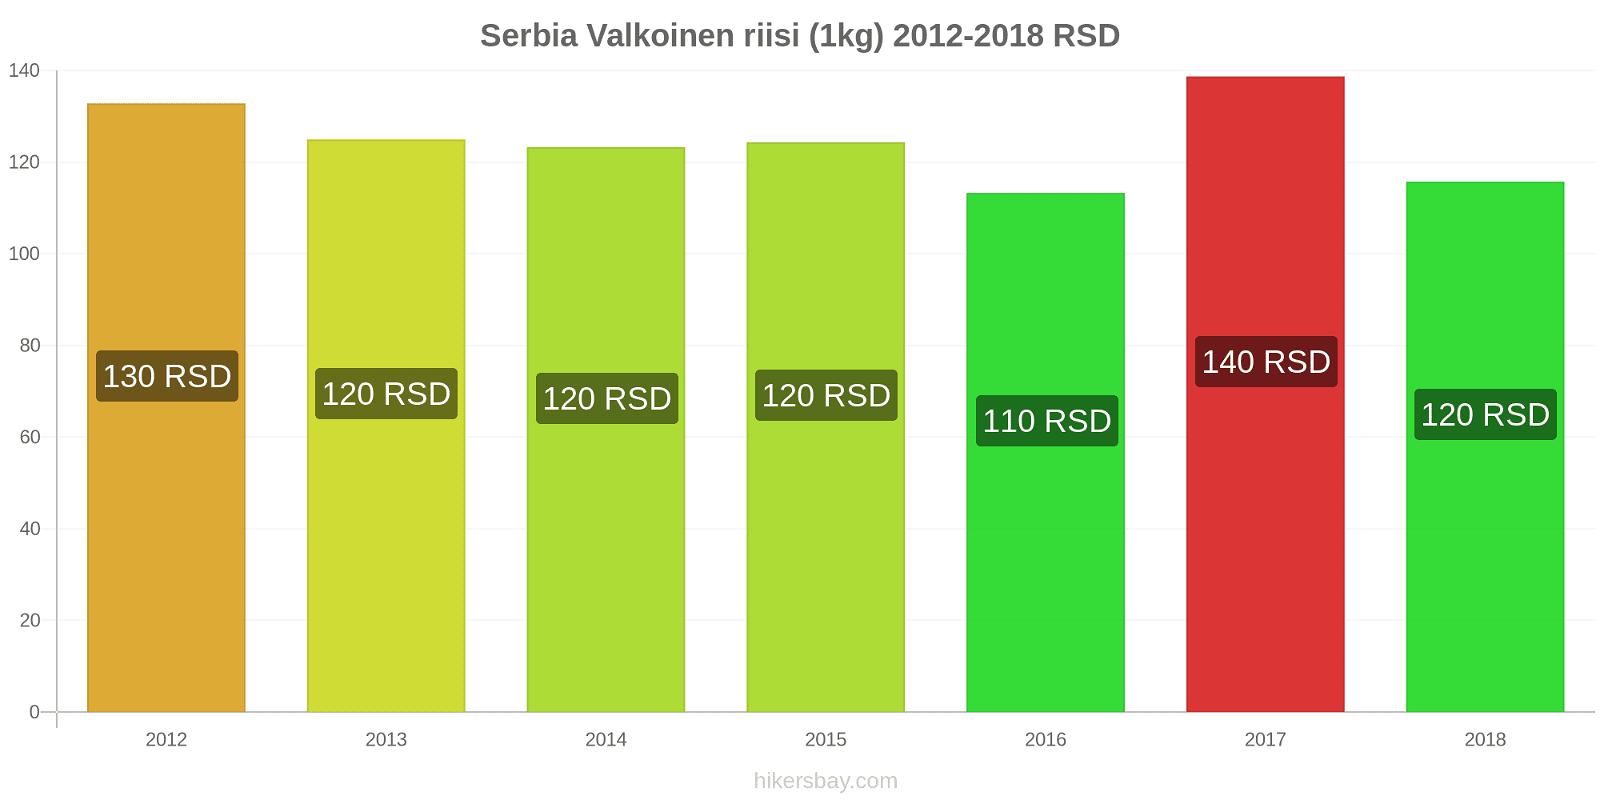 Serbia hintojen muutokset Valkoinen riisi (1kg) hikersbay.com